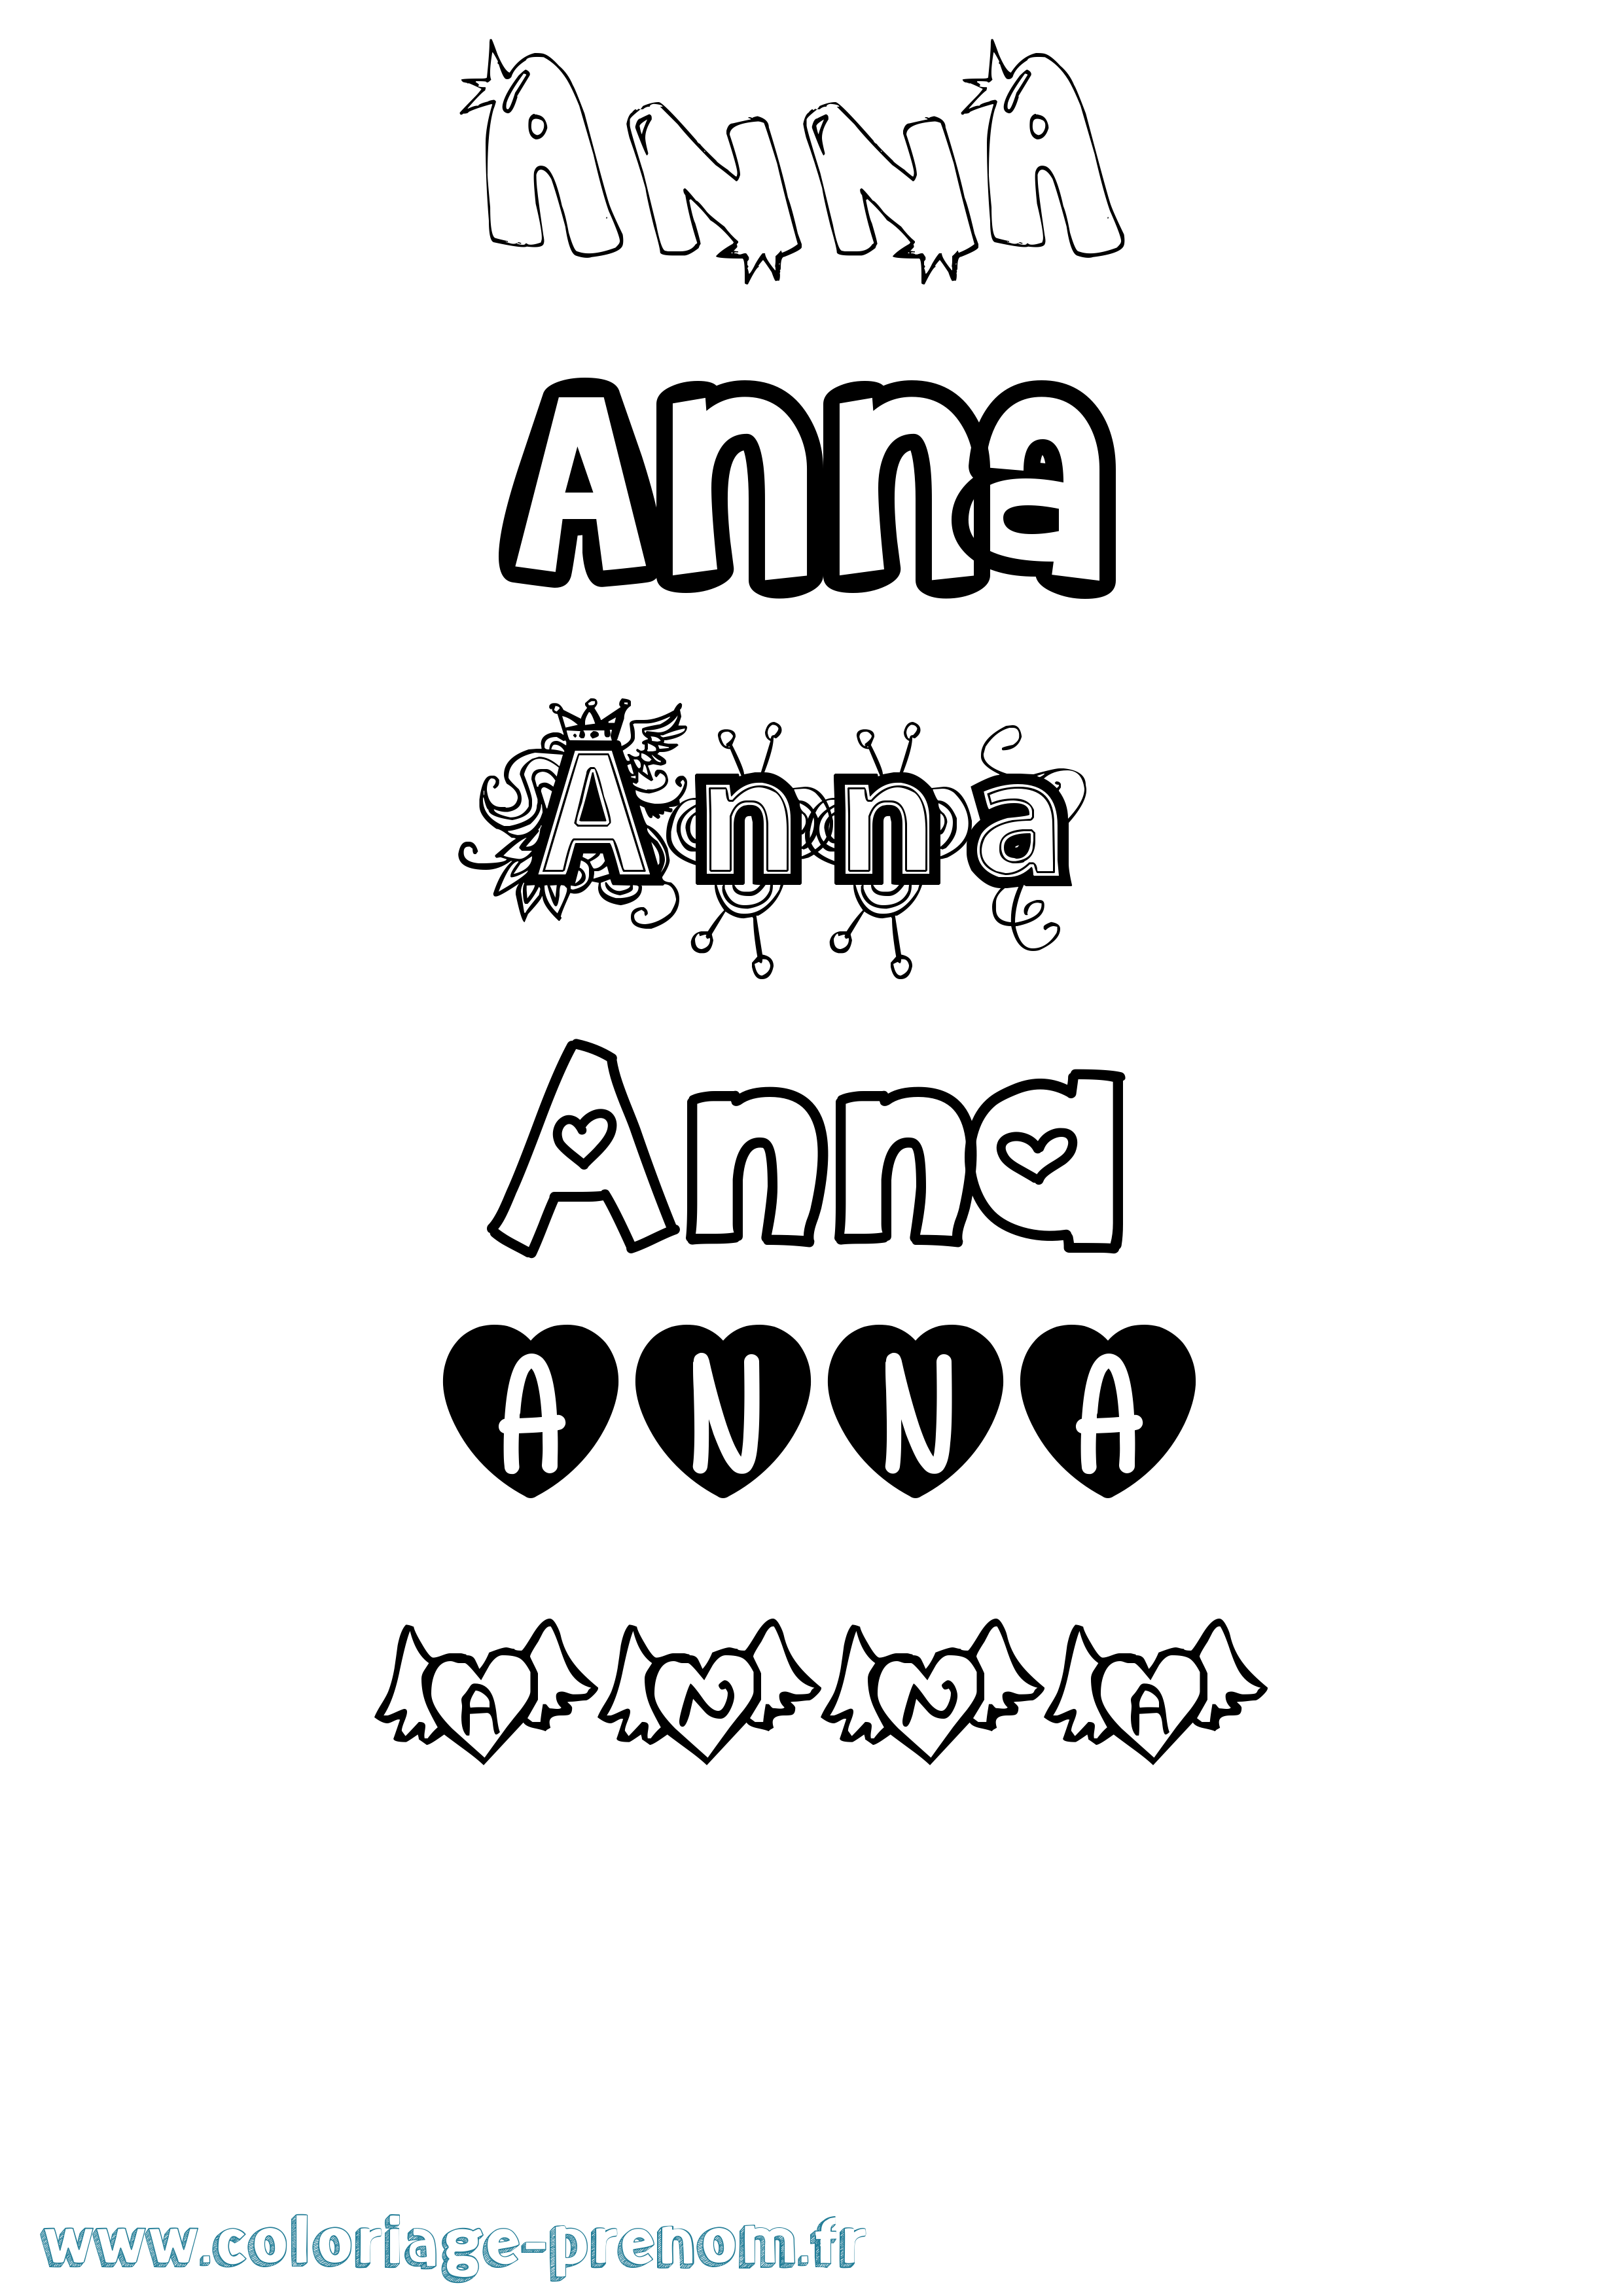 Coloriage prénom Anna Girly